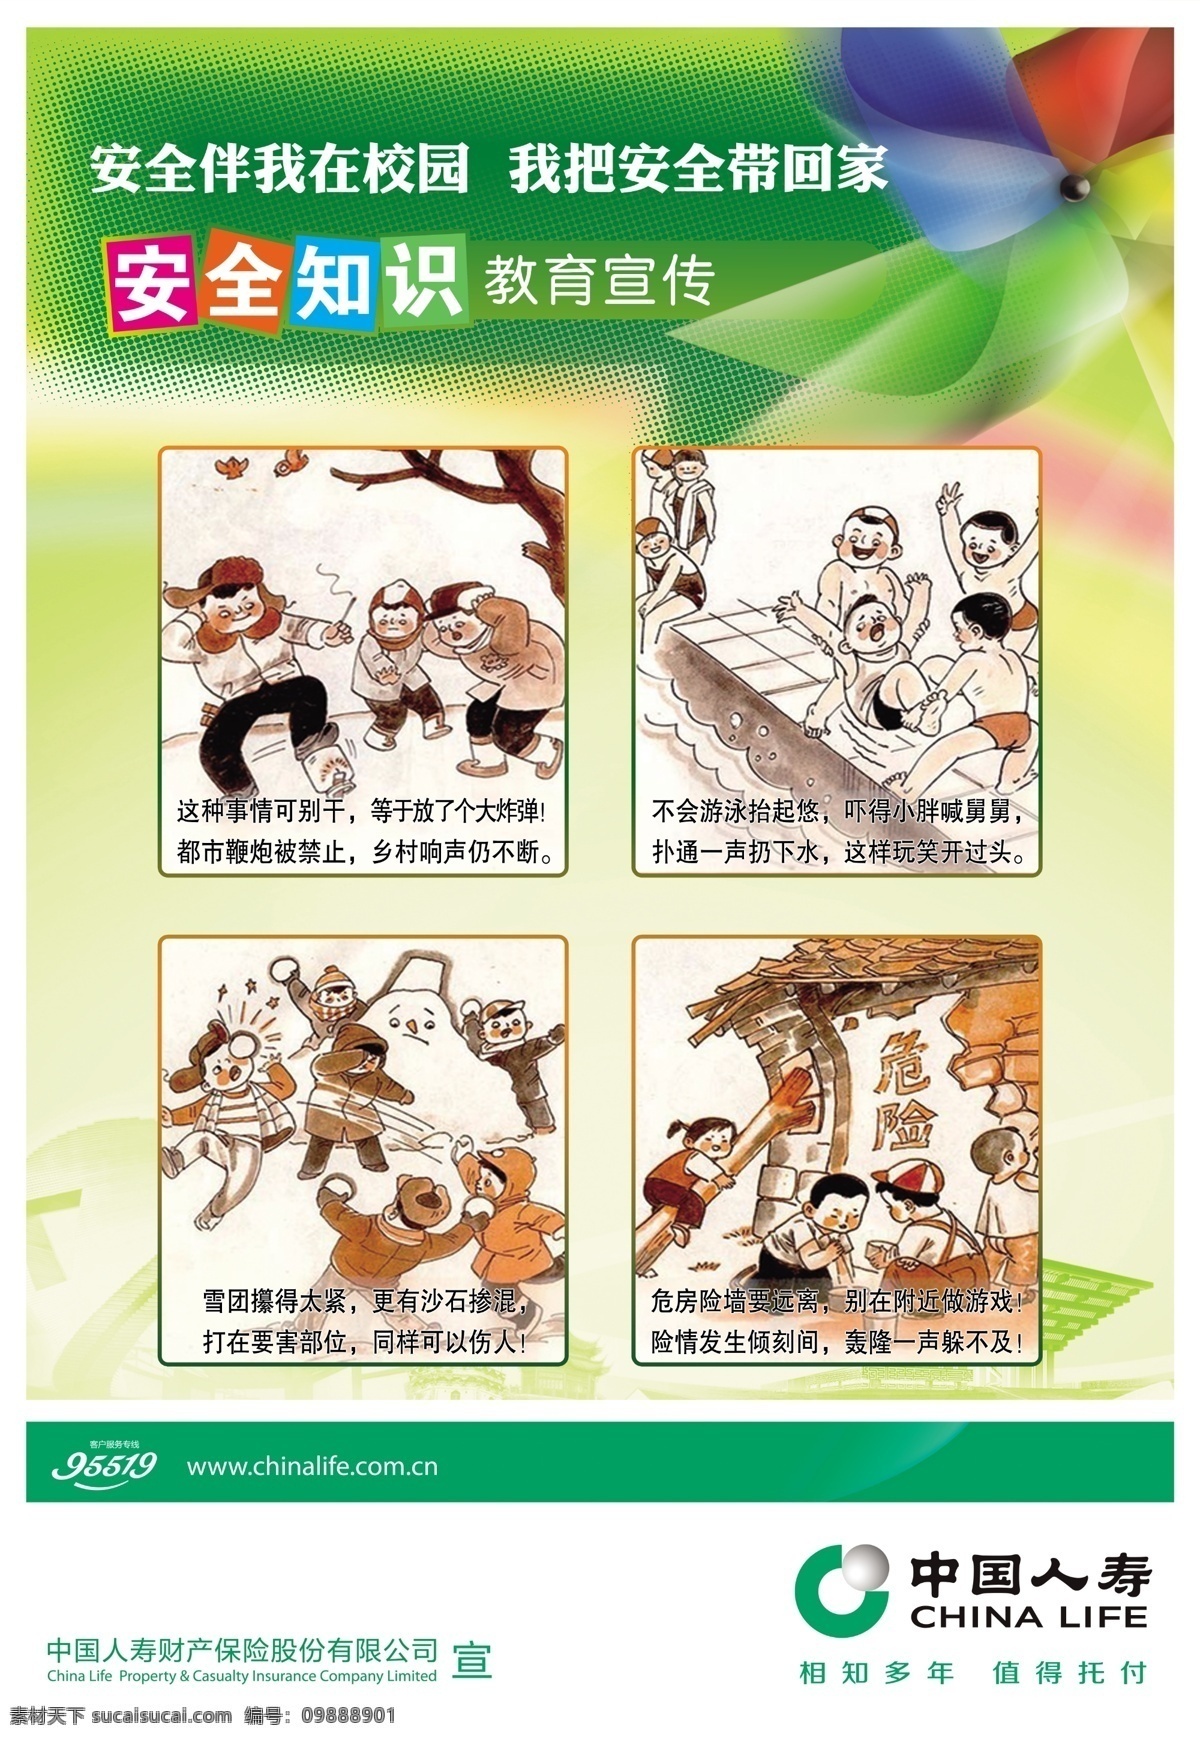 校园 安全 海报 教育宣传 卡通 漫画 校园宣传 中国人寿财险 伴 安全带 回家 原创设计 原创海报